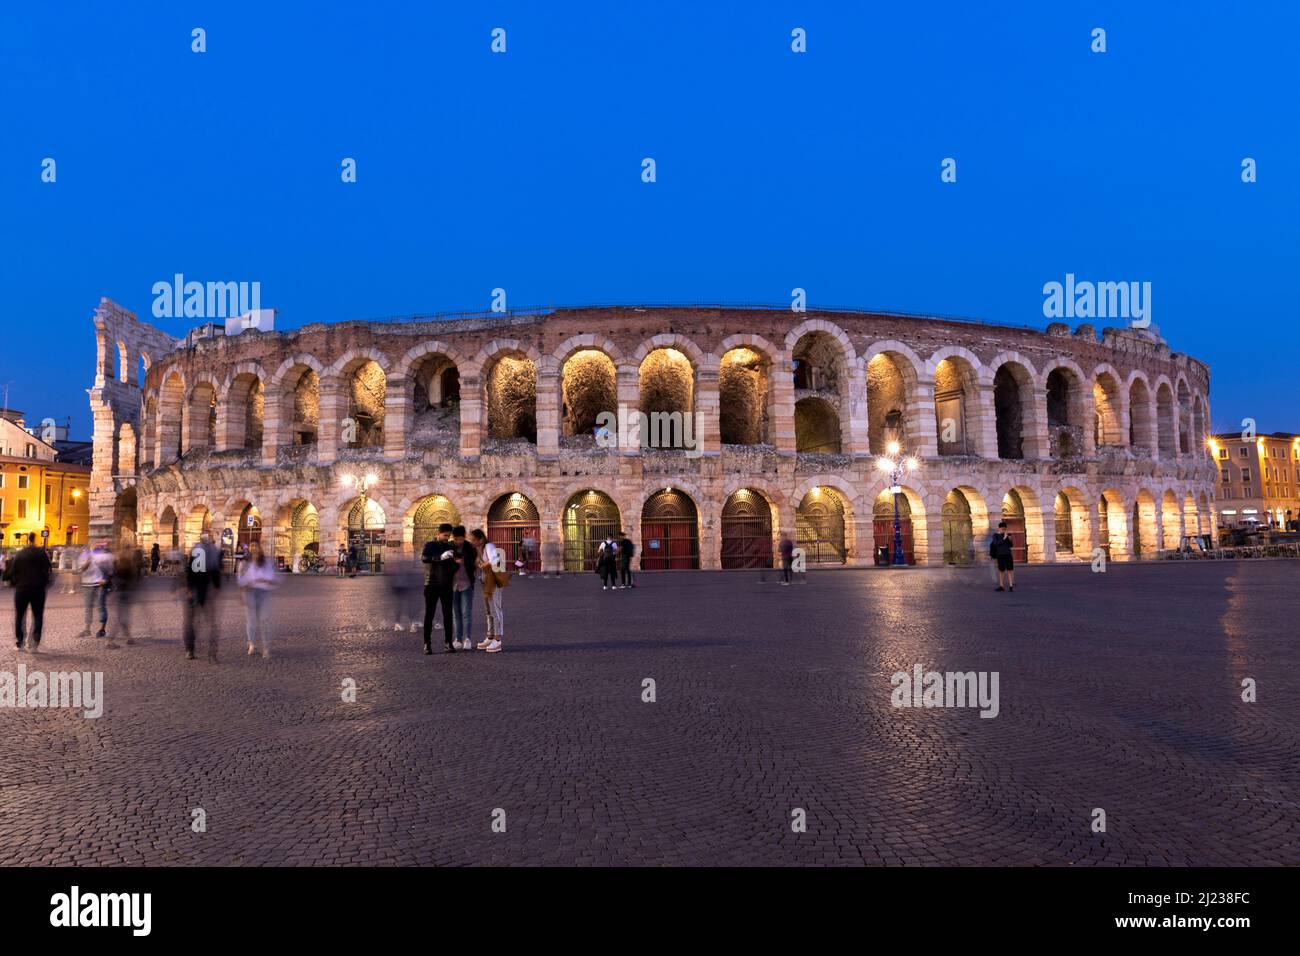 Italie, Vérone, l'Arena di Verona, un amphithéâtre romain au crépuscule avec des gens. Banque D'Images